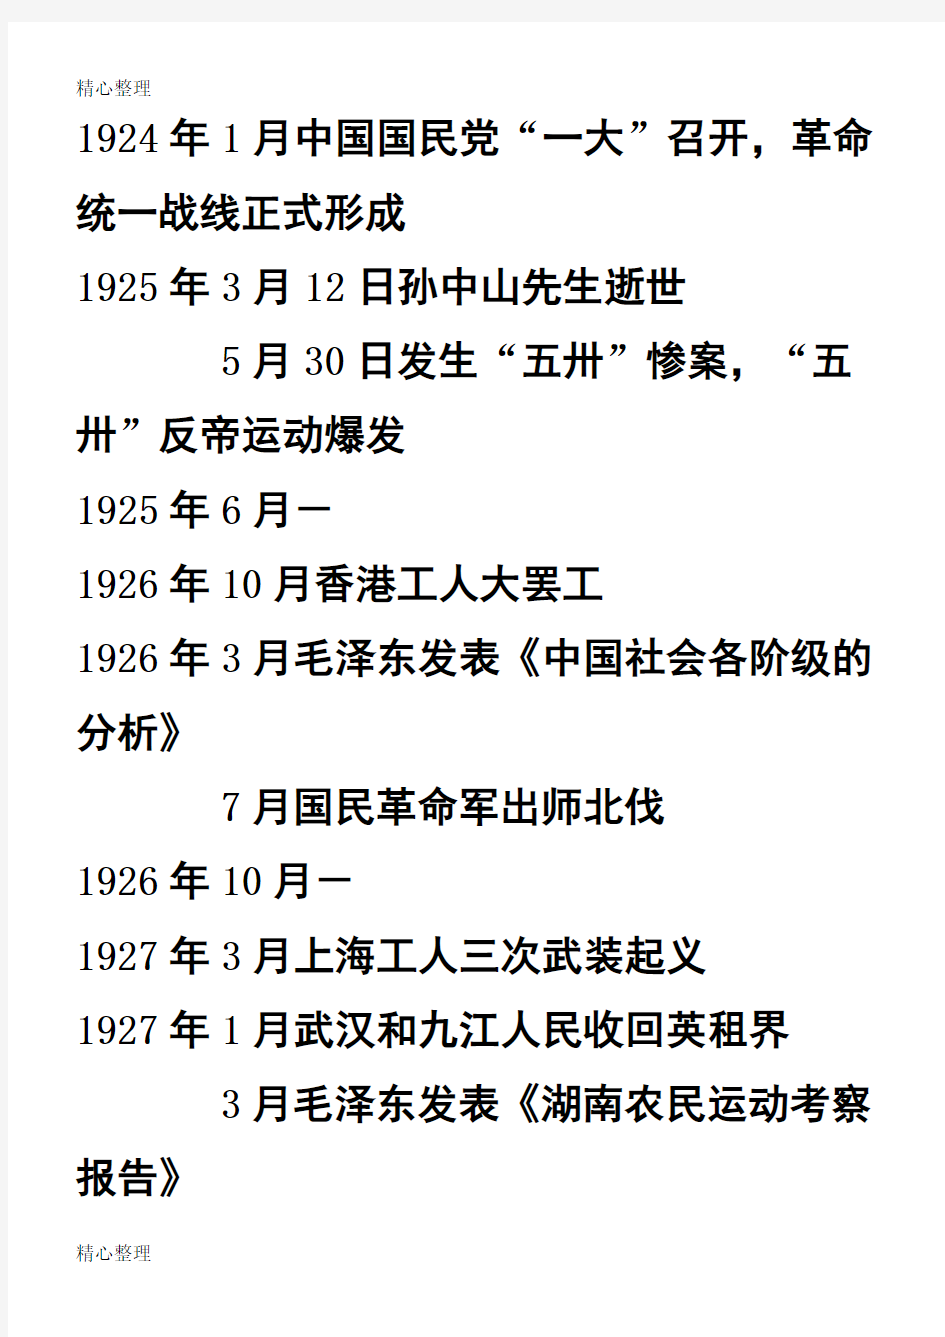 中国1919-1949大事年表